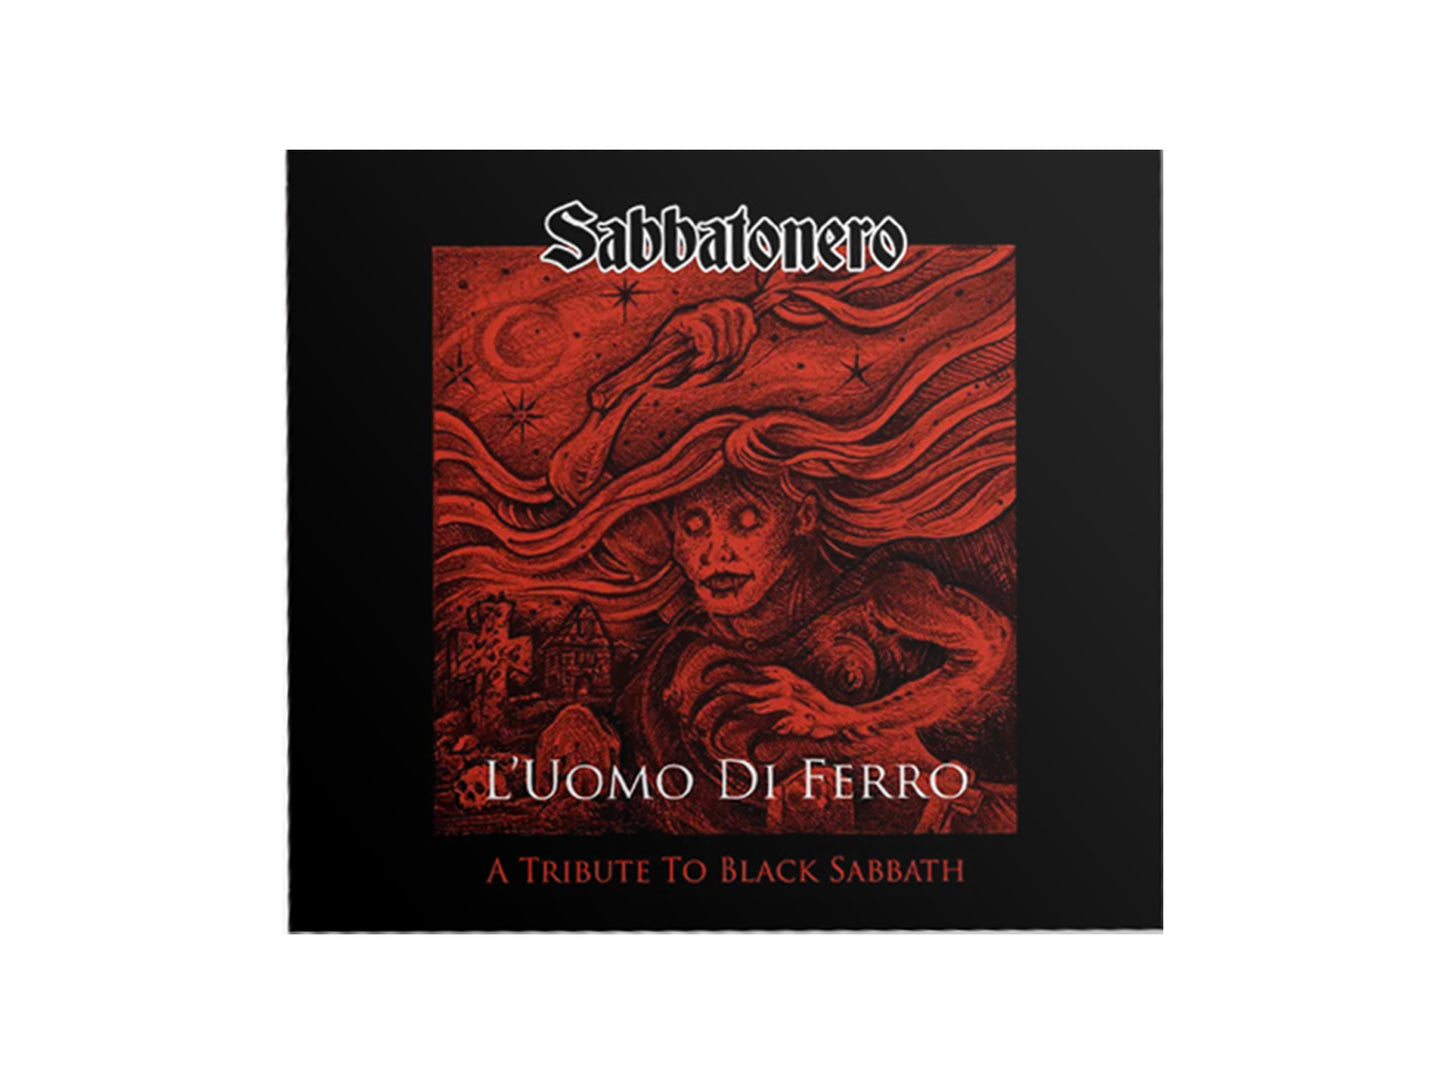 Sabbatonero "L'Uomo Di Ferro" CD + MC bundle